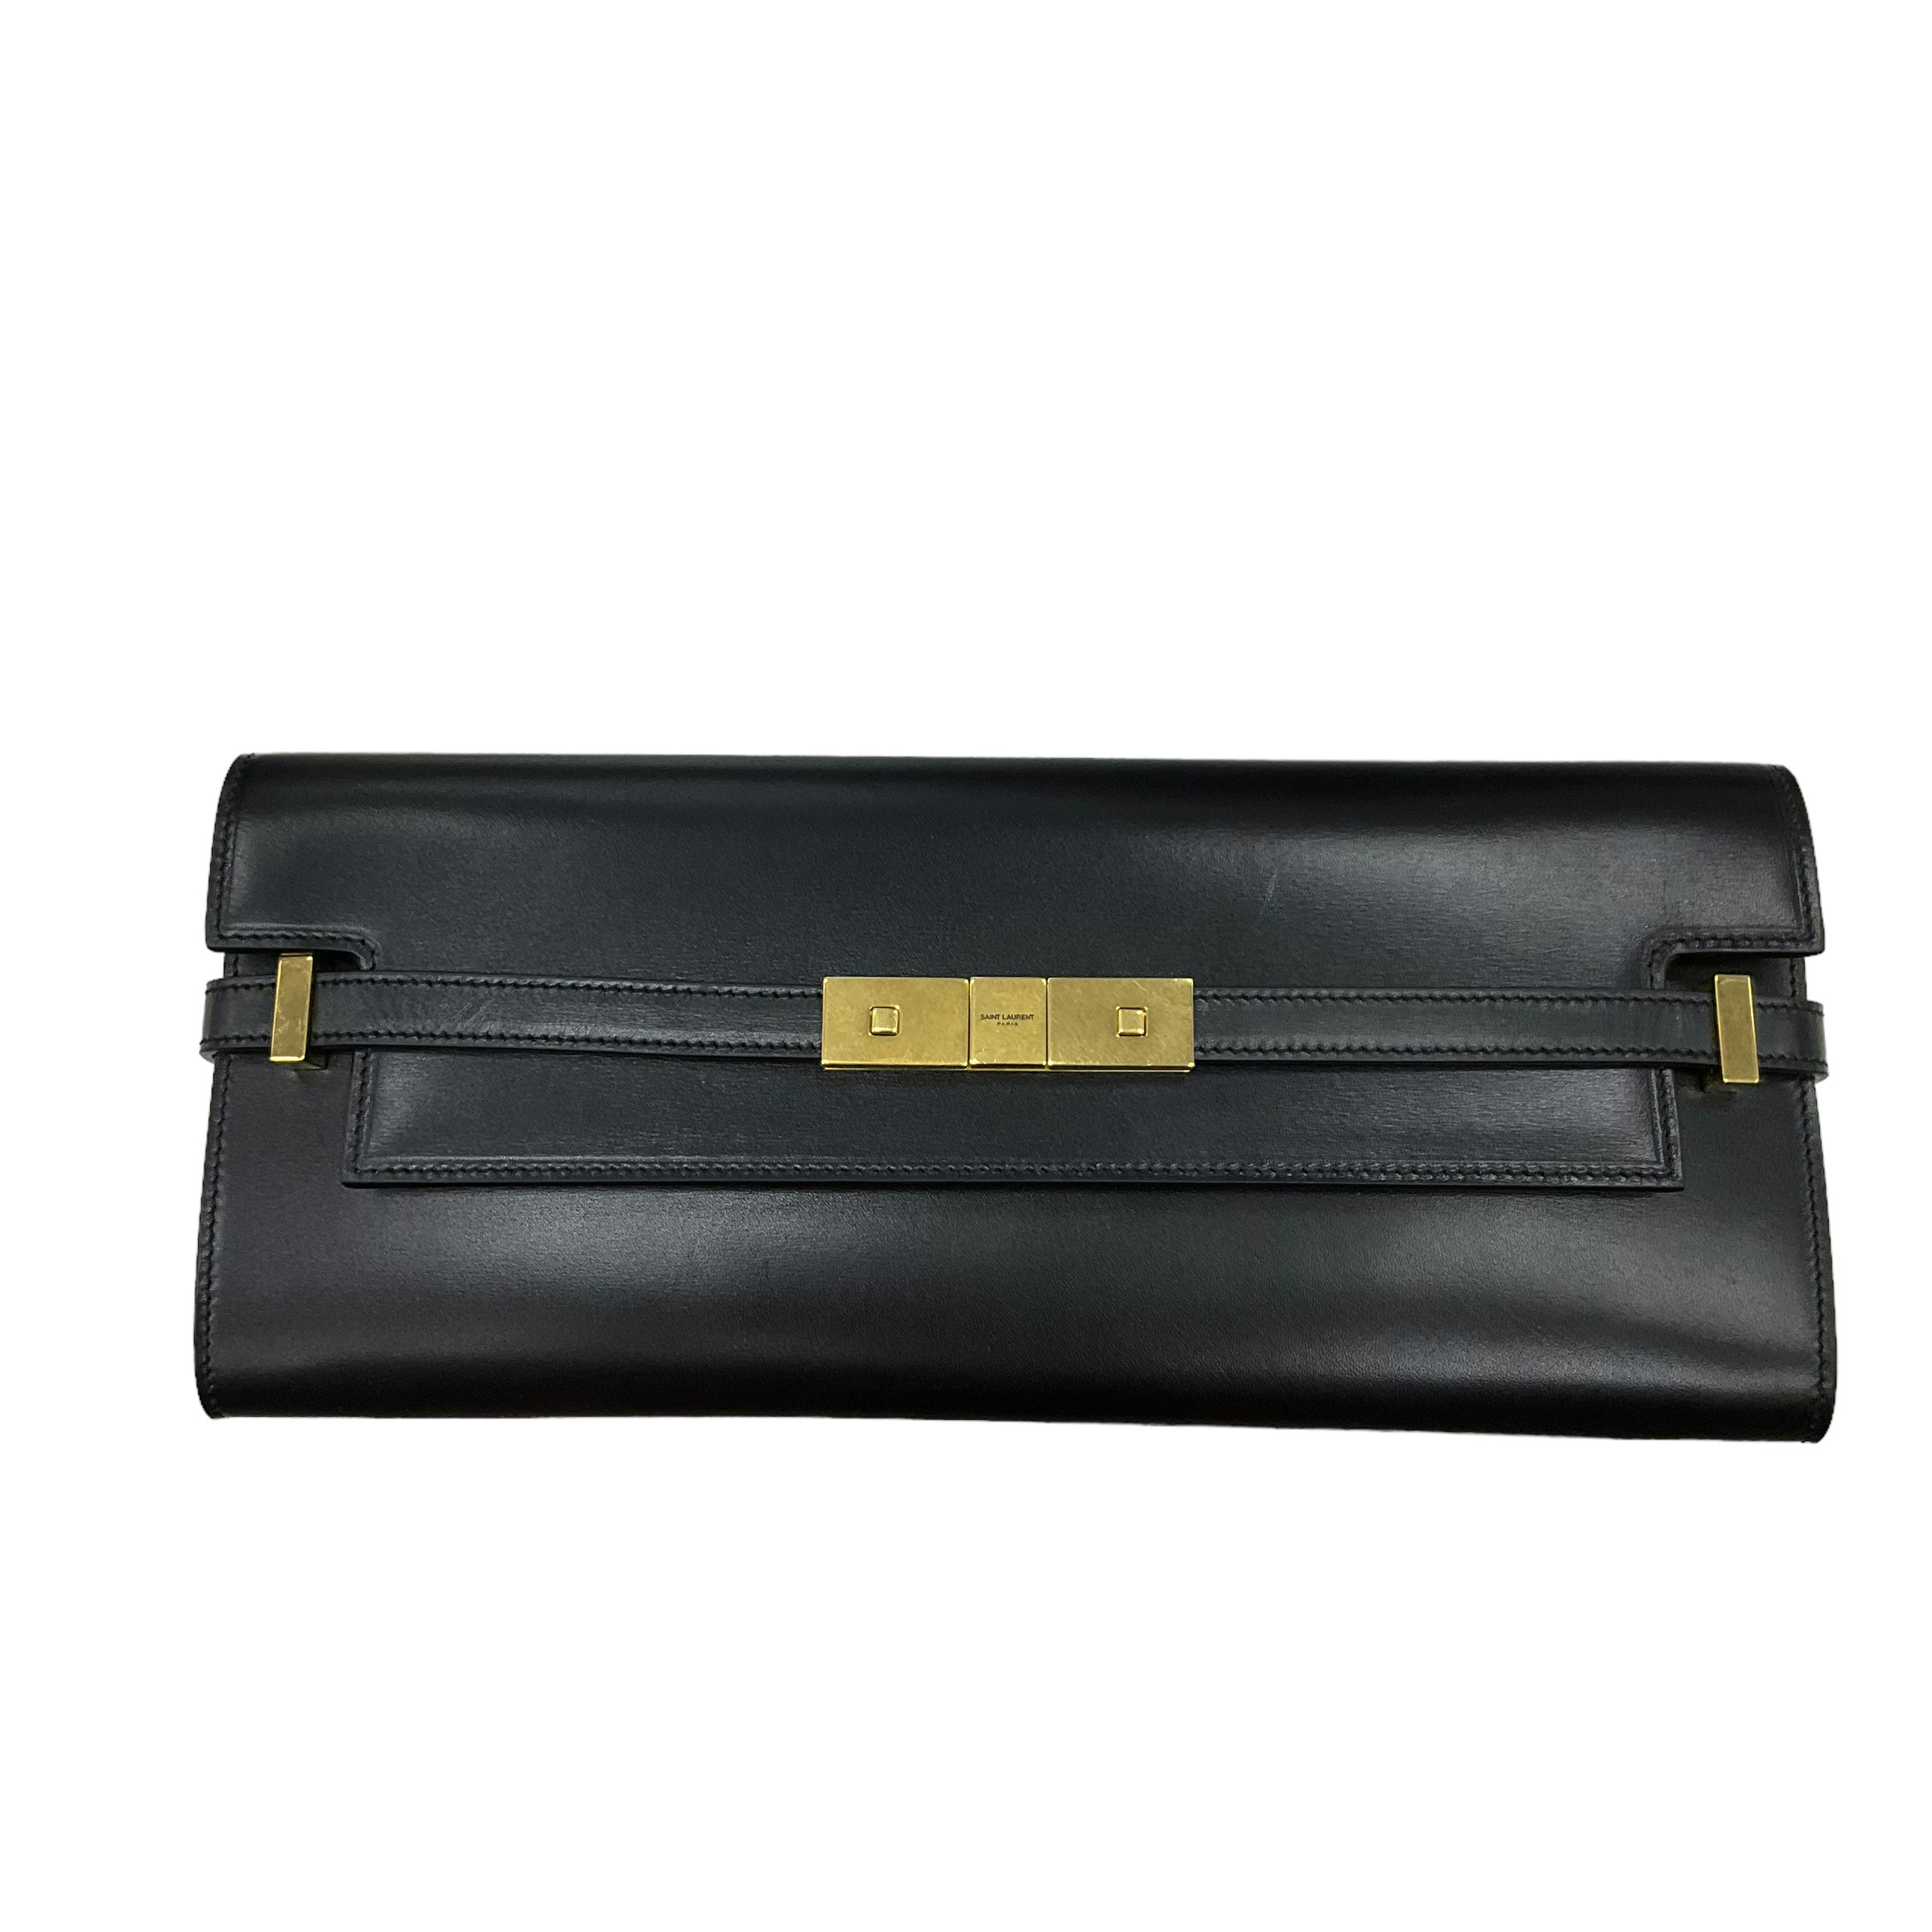 Saint Laurent leather clutch bag - Black